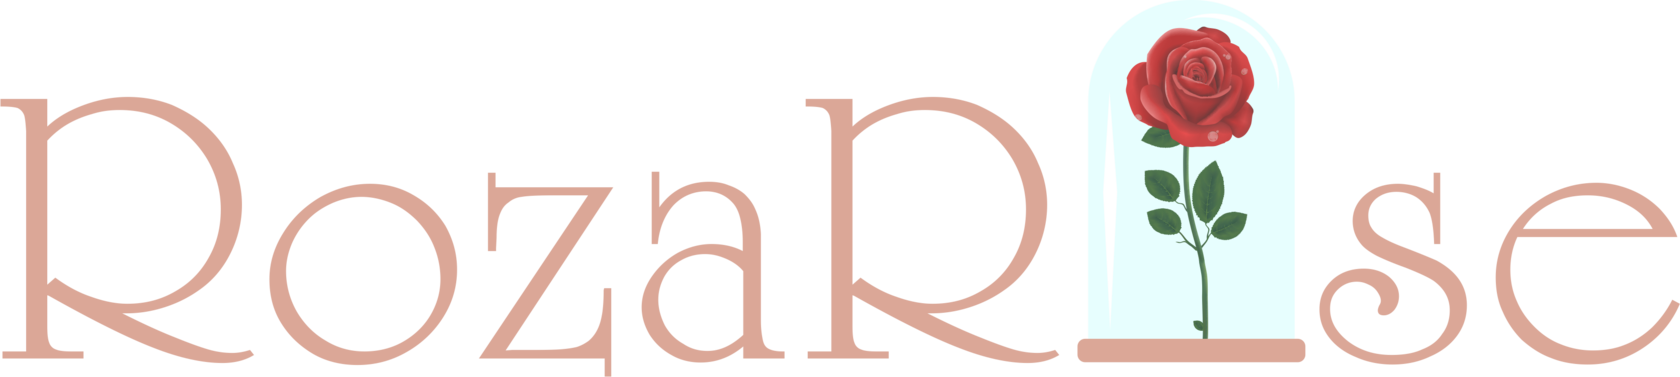 RozaRose - logo